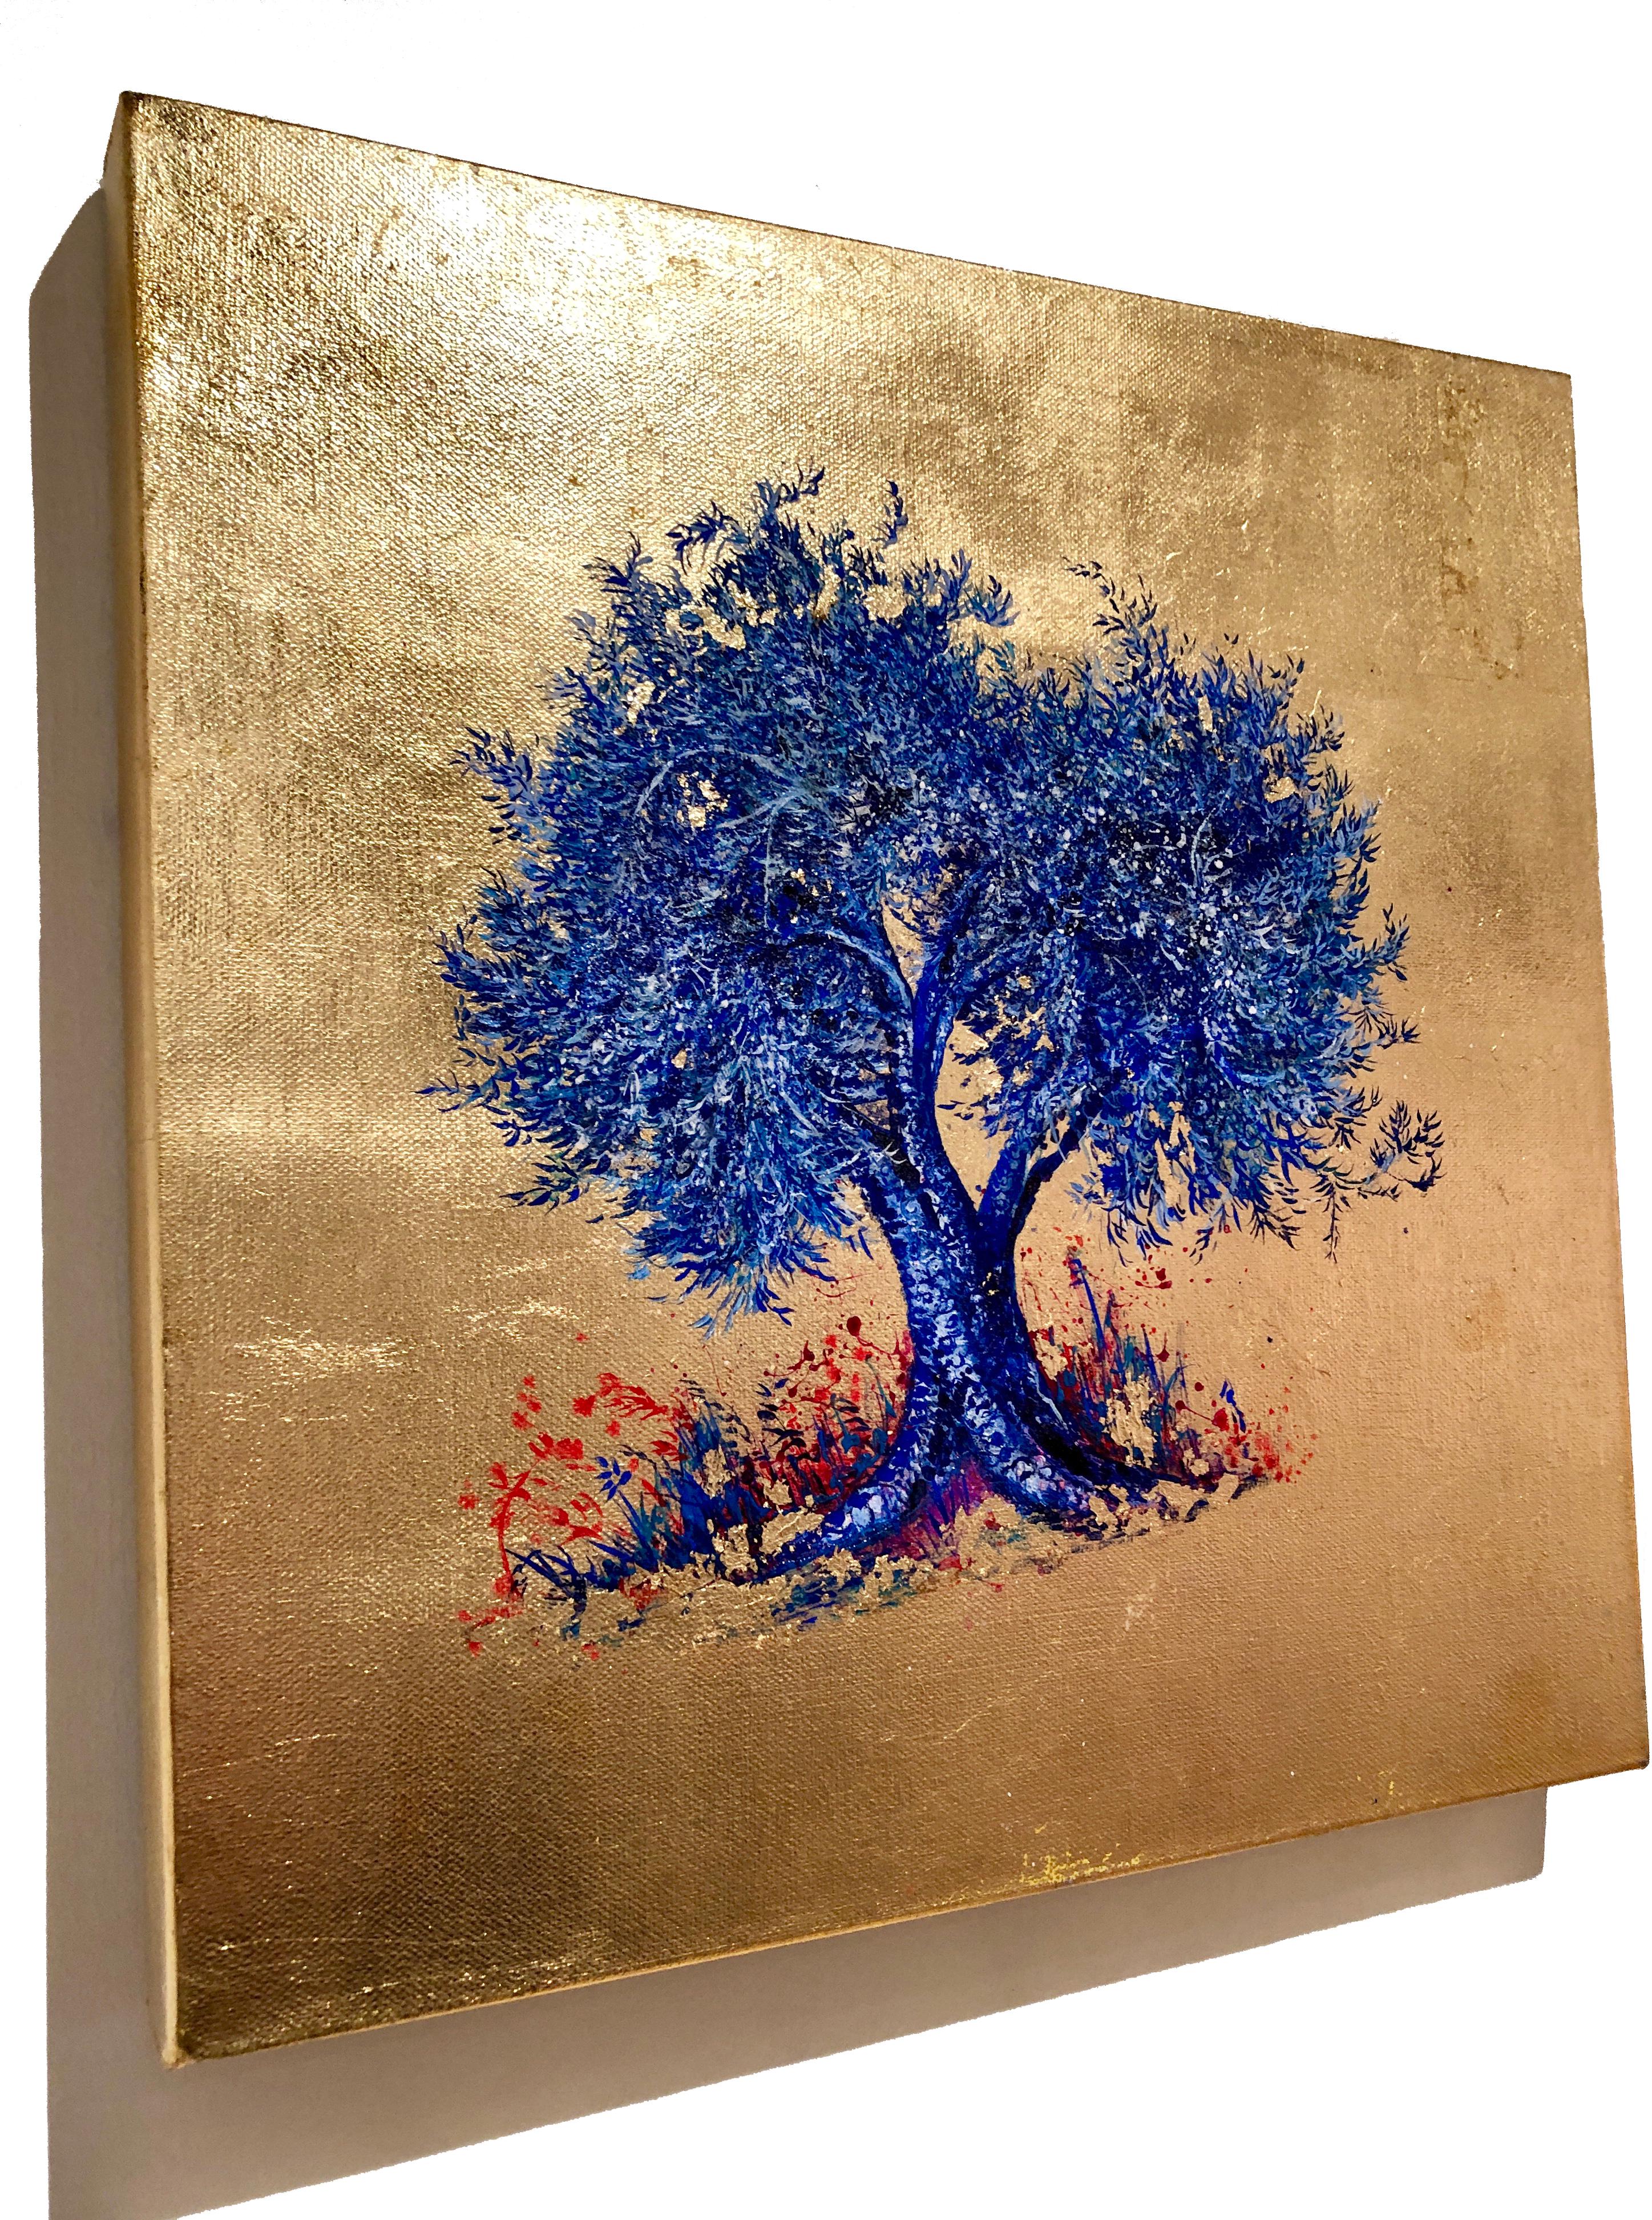 Zeitgenössisches Ölgemälde auf Leinwand:: Blattgold:: Indigo:: blühender blauer Baum 1